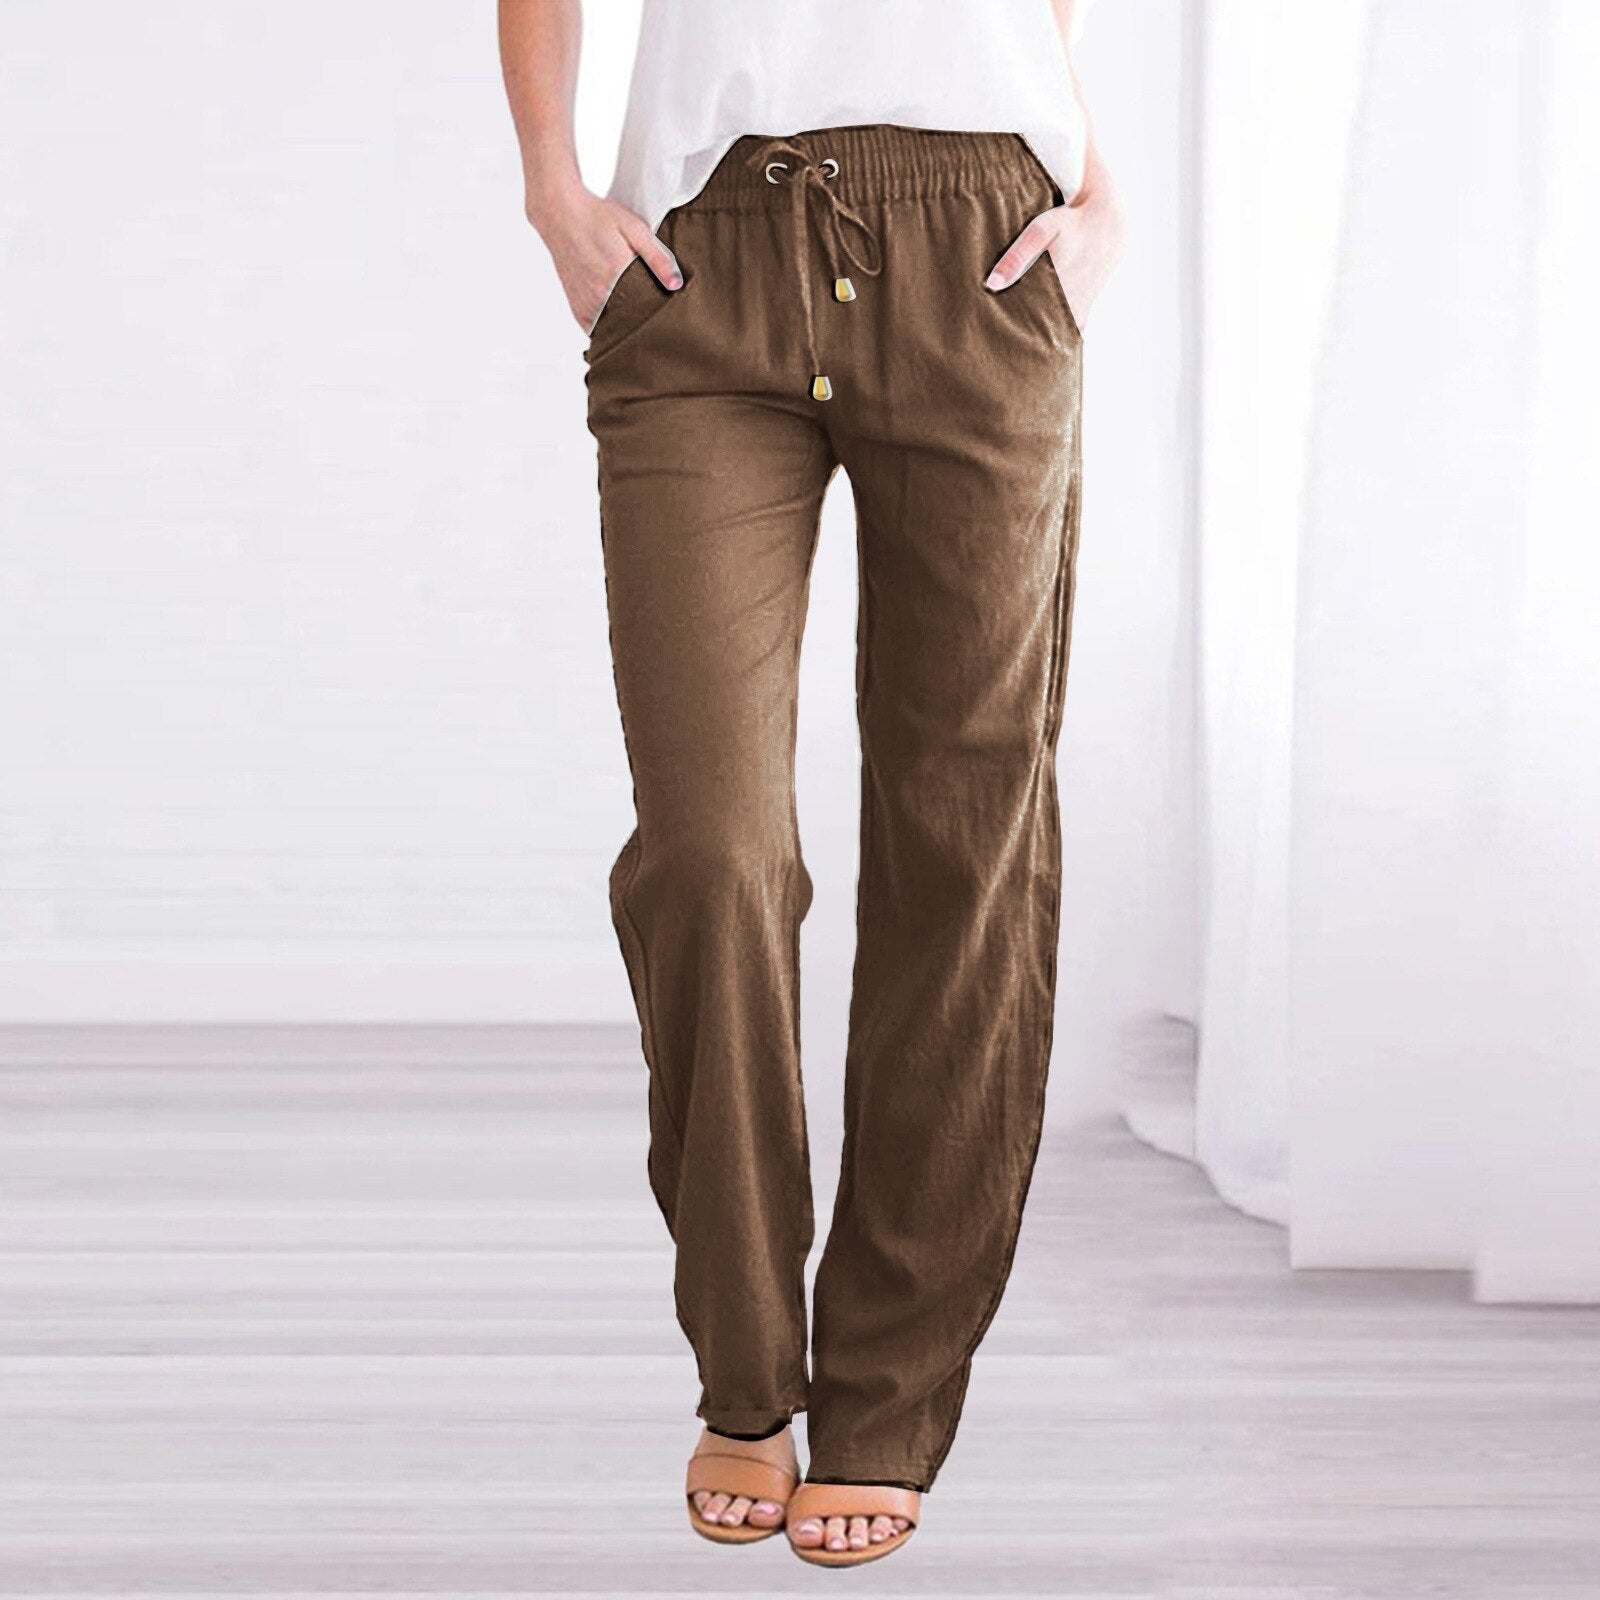 Winter Loose Linen Pants, Women's Cotton Linen Warm Pants, Casual